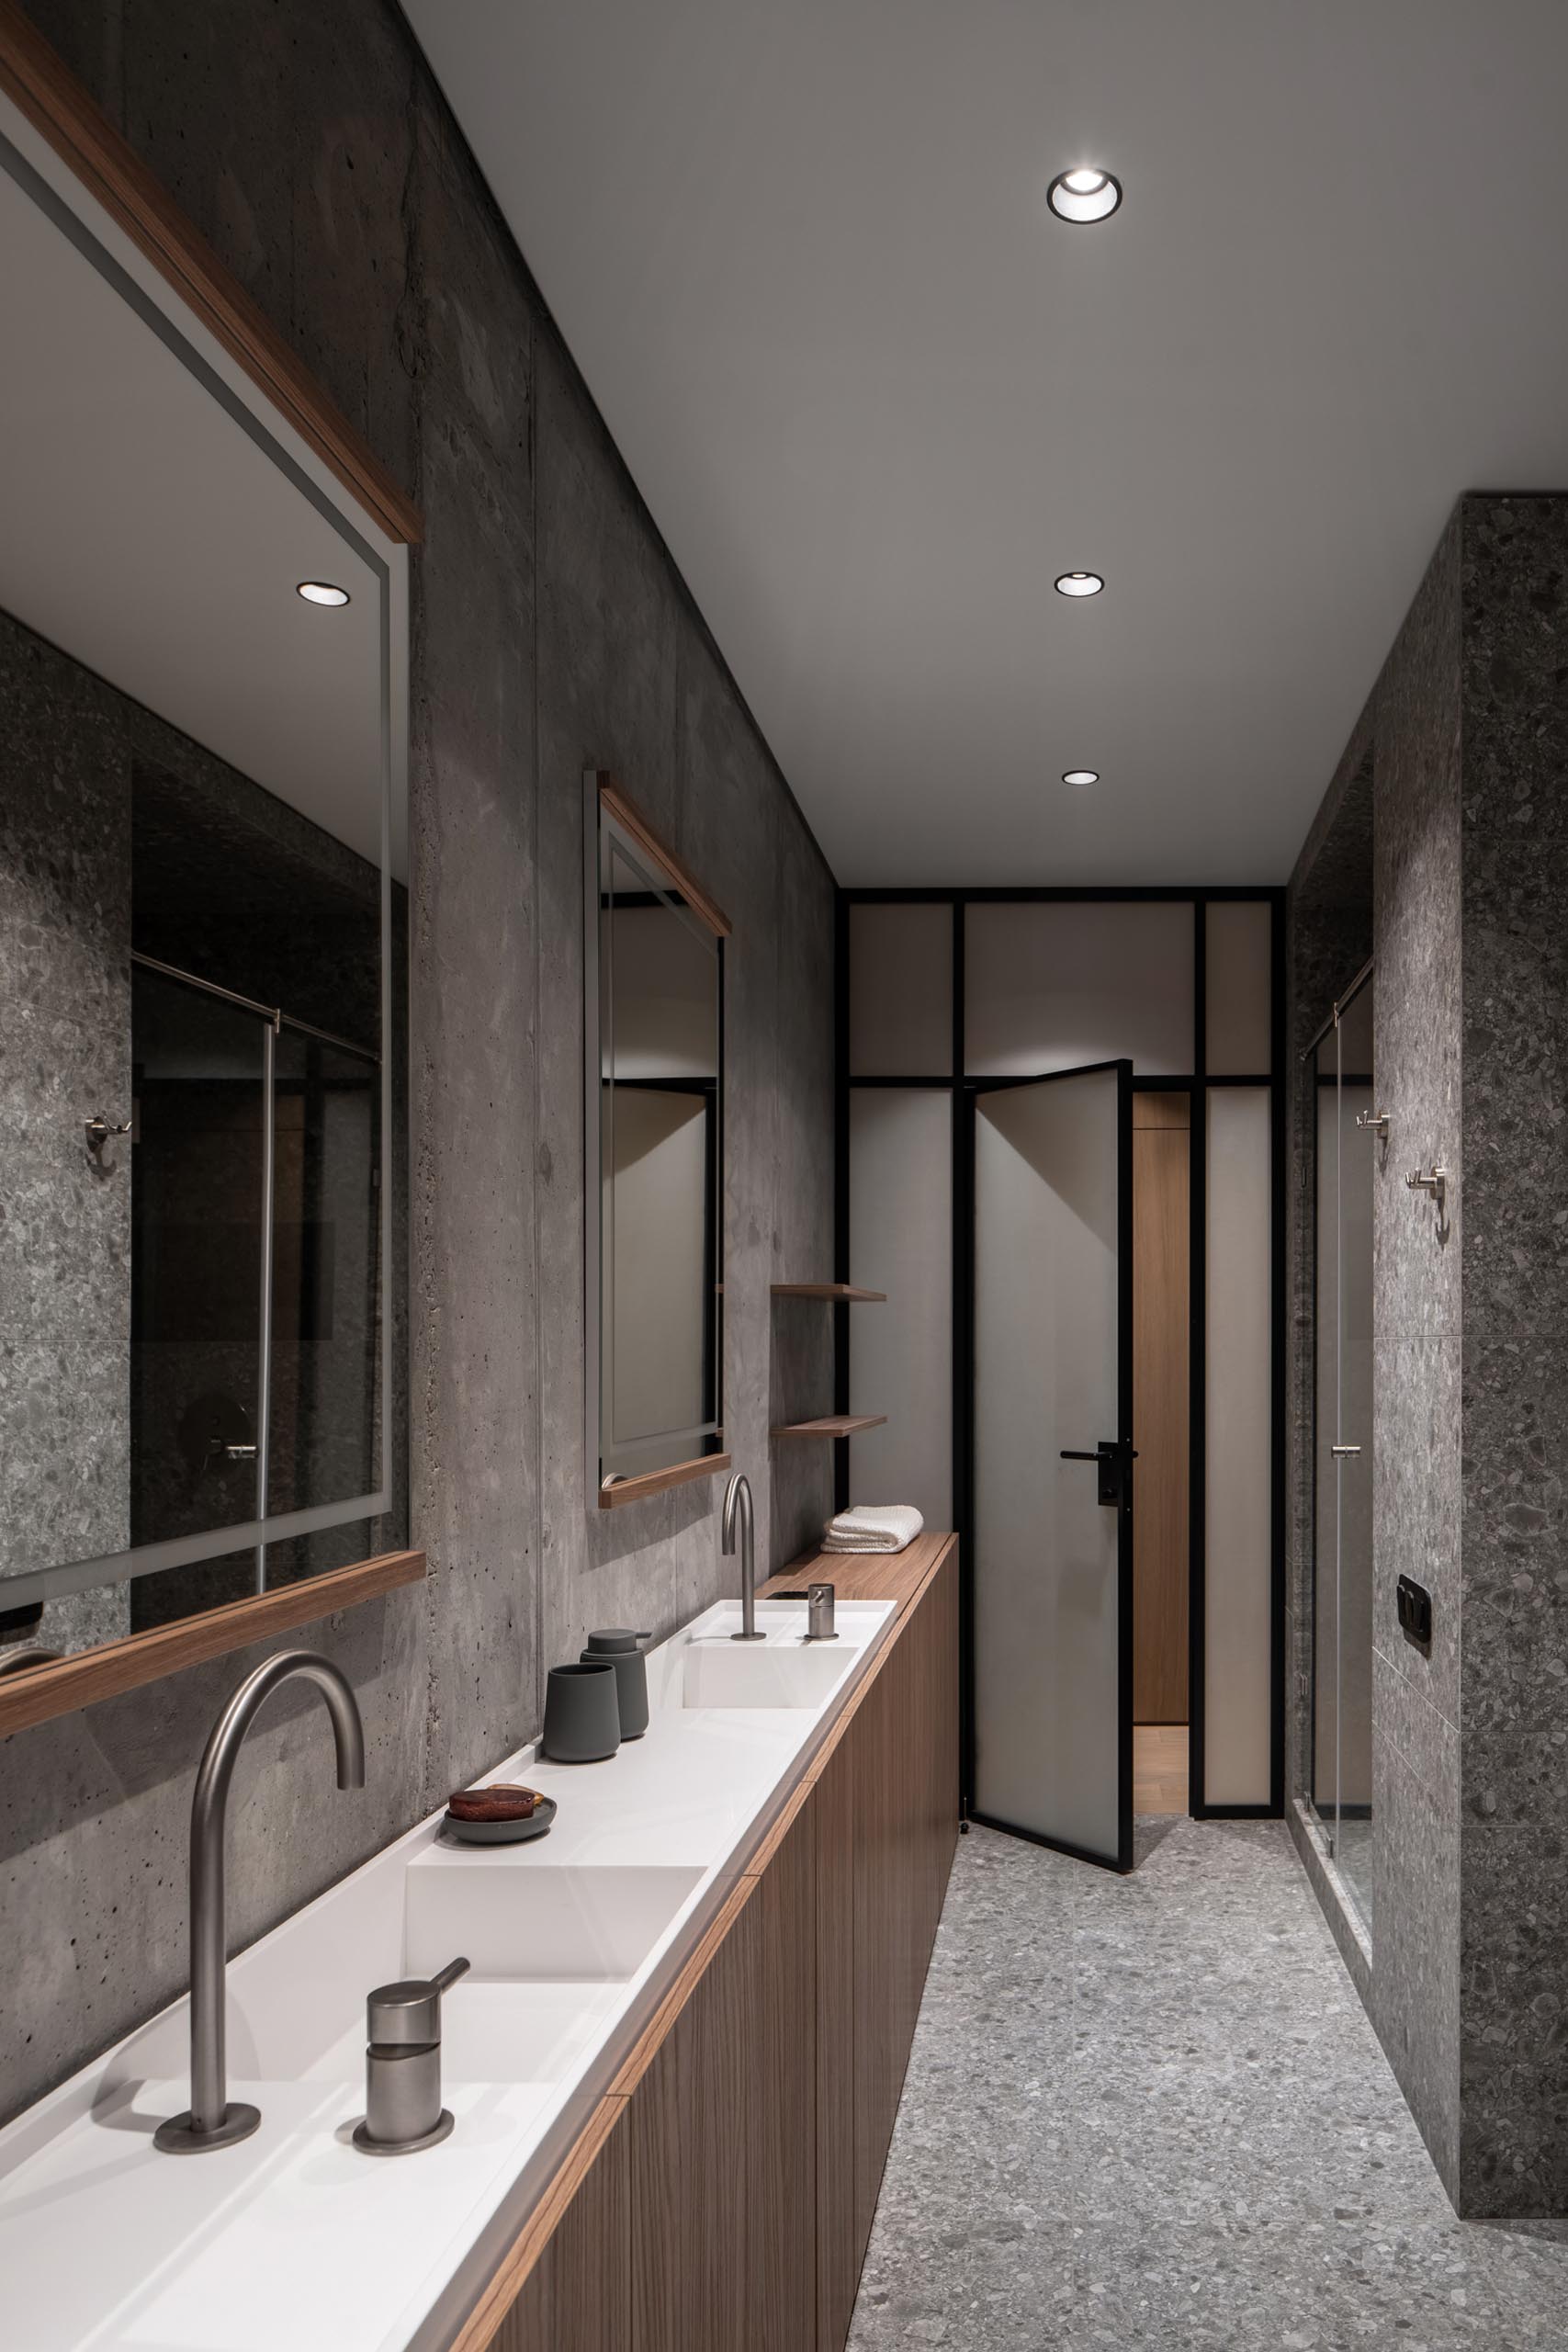 Современная ванная комната с изготовленной на заказ узкой двойной раковиной с белой столешницей и деревянными шкафчиками под ней.